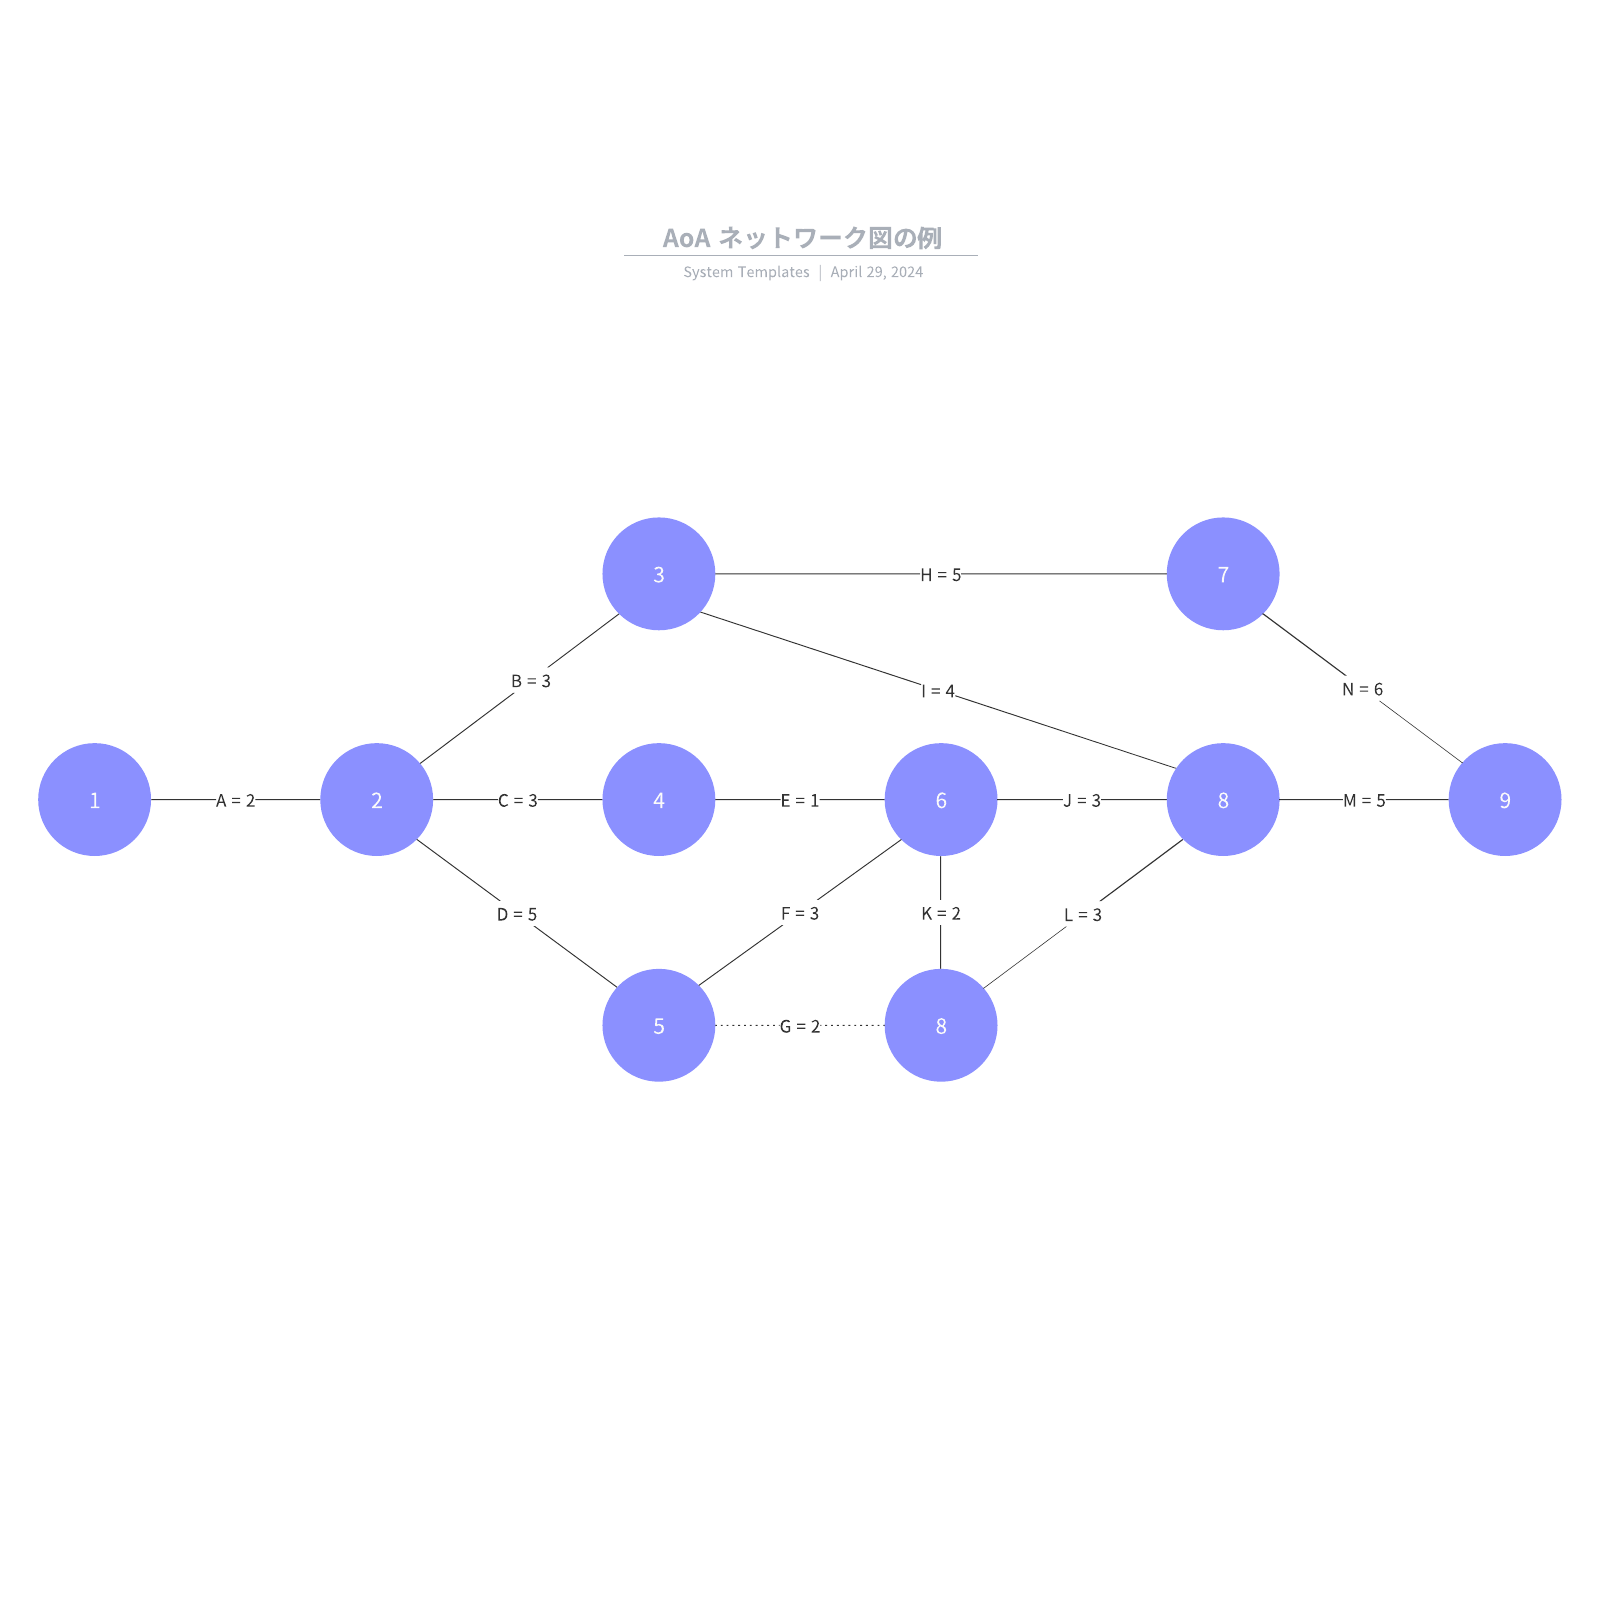 AoA ネットワーク図の例